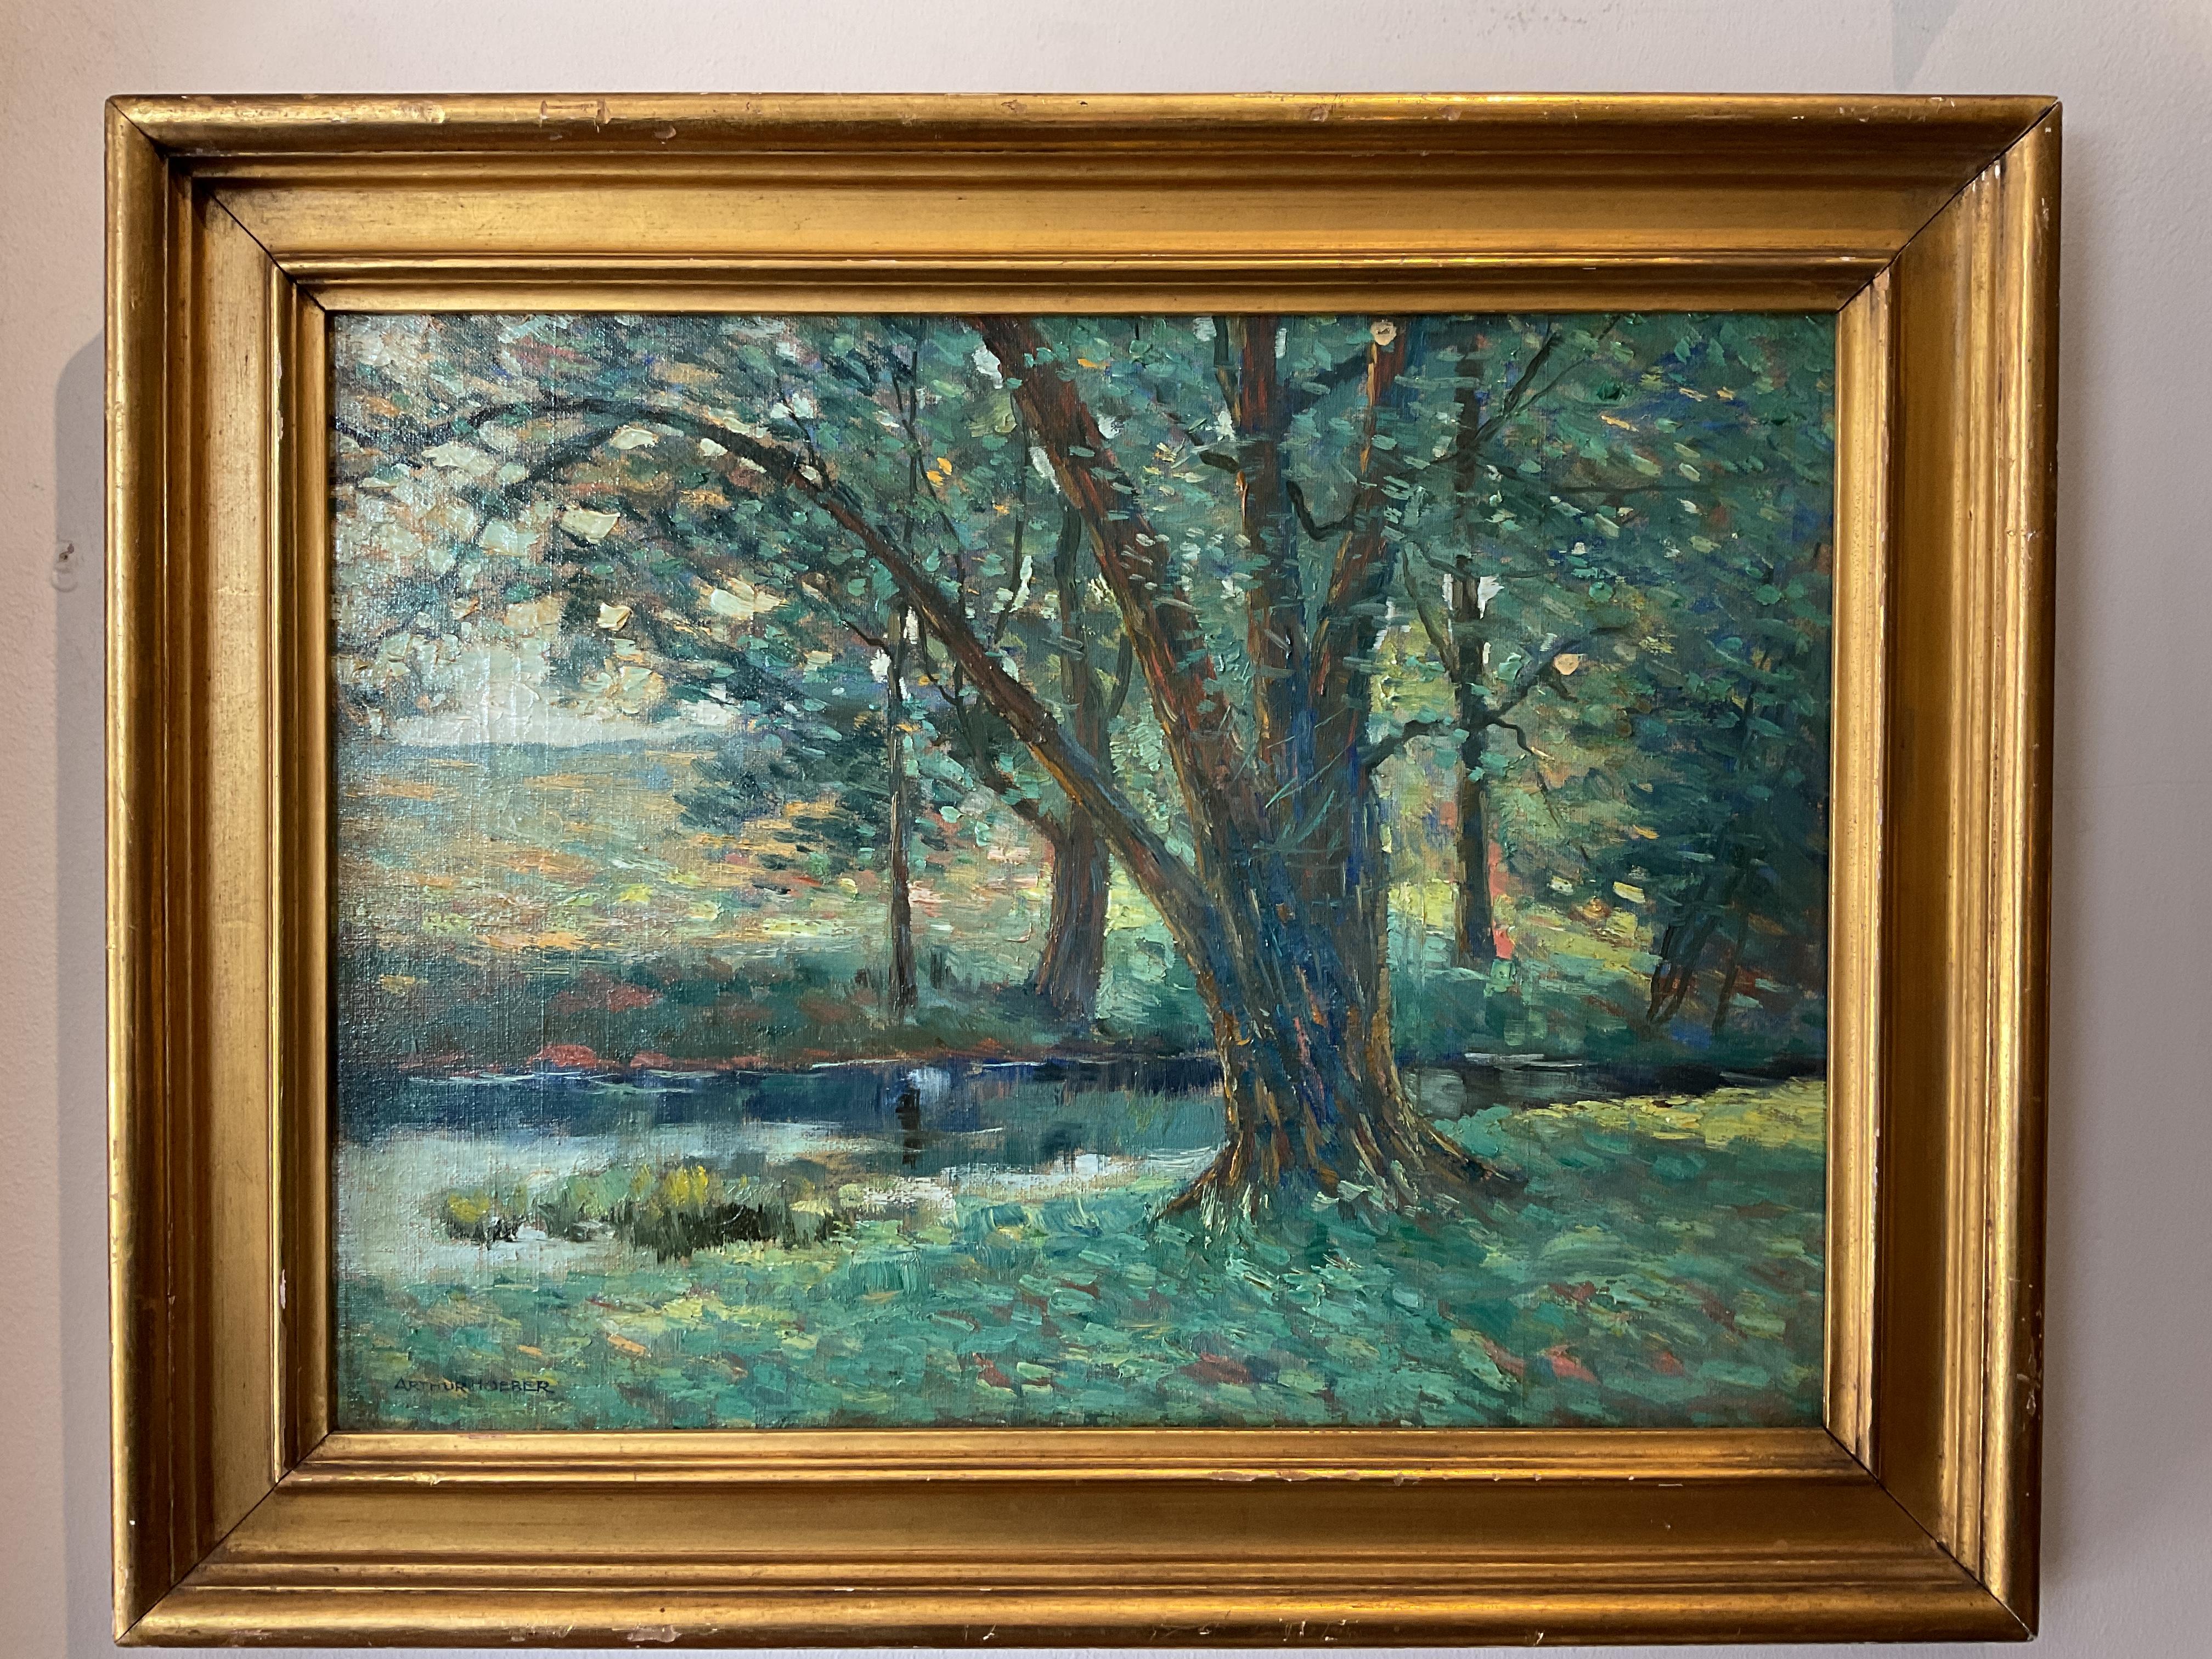 Cette magnifique peinture à l'huile impressionniste américaine représente un saule majestueux au bord d'un ruisseau. L'artiste Arthur Hoeber (1854-1915) a utilisé une palette colorée combinée à des touches de peinture dans un style impressionniste